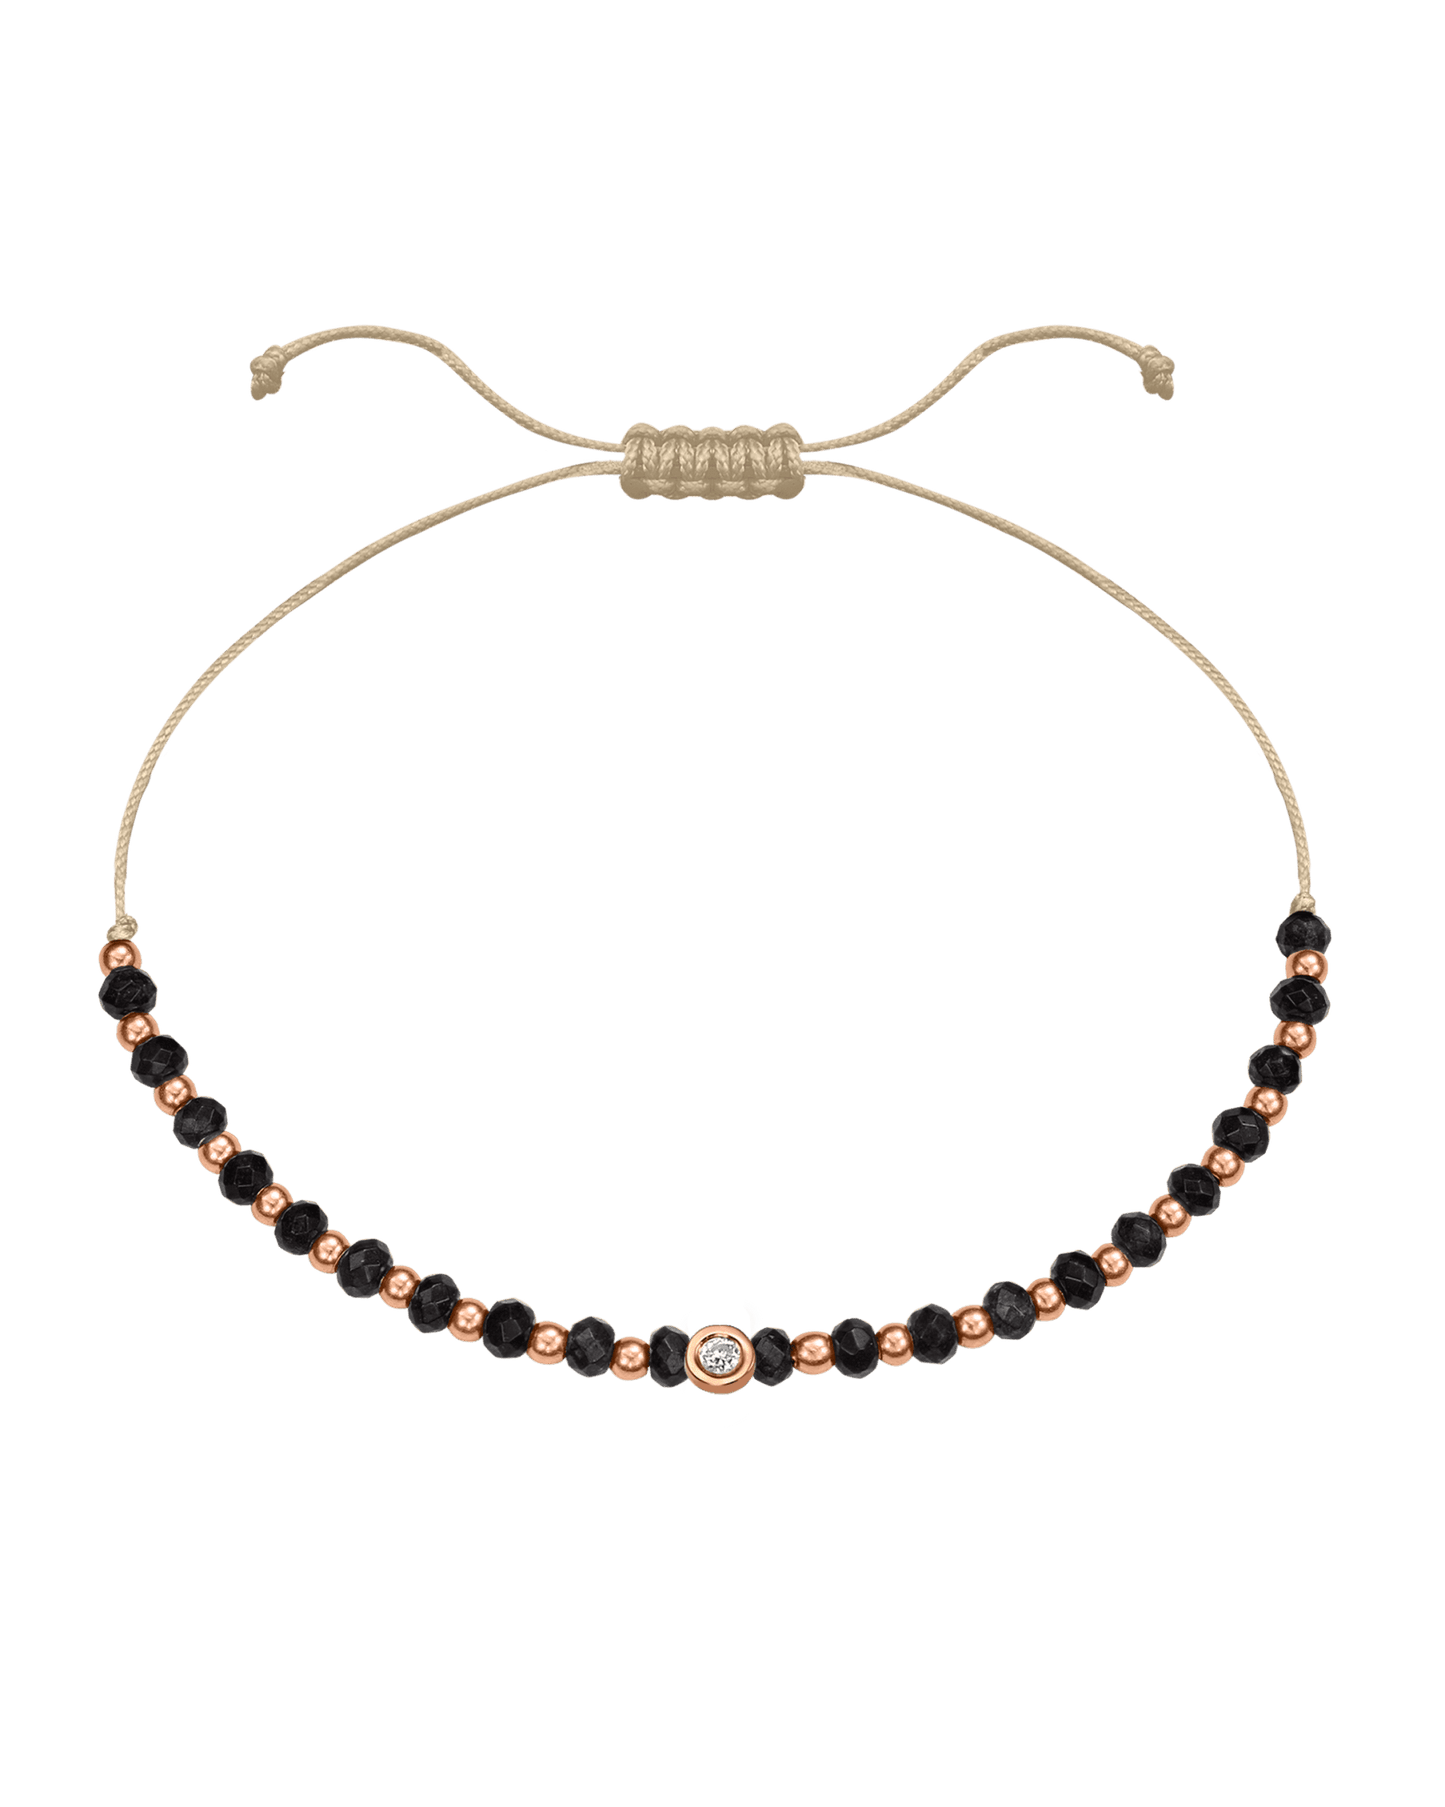 Black Onyx Gemstone String of Love Bracelet for Protection - 14K Rose Gold Bracelets 14K Solid Gold Beige Small: 0.03ct 